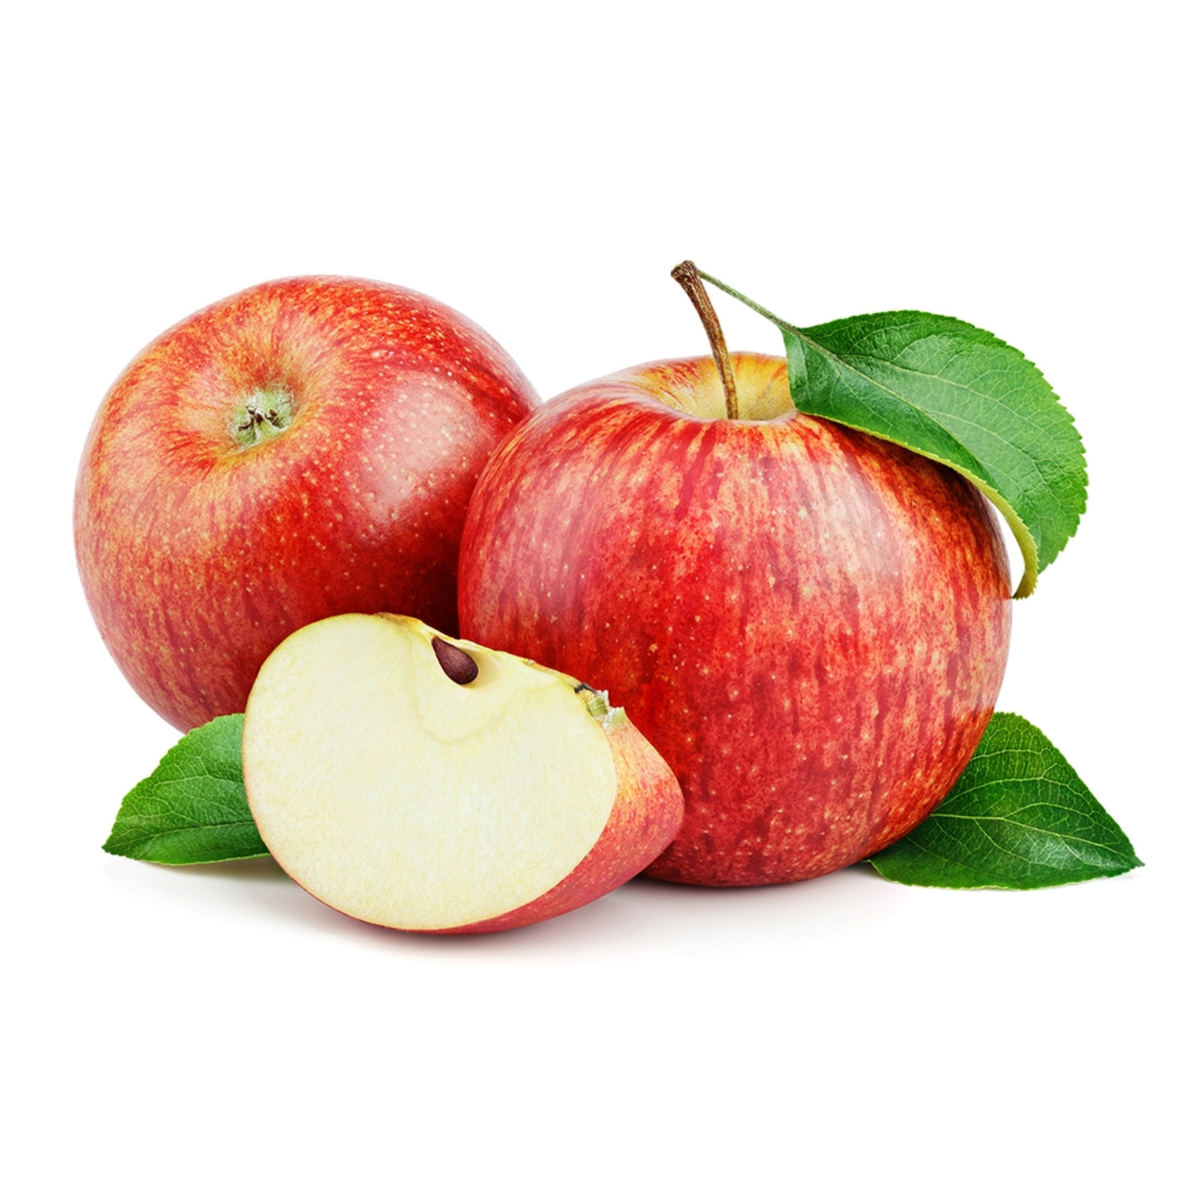 تفاح رويال جالا الوزن التقريبي 1 كجم